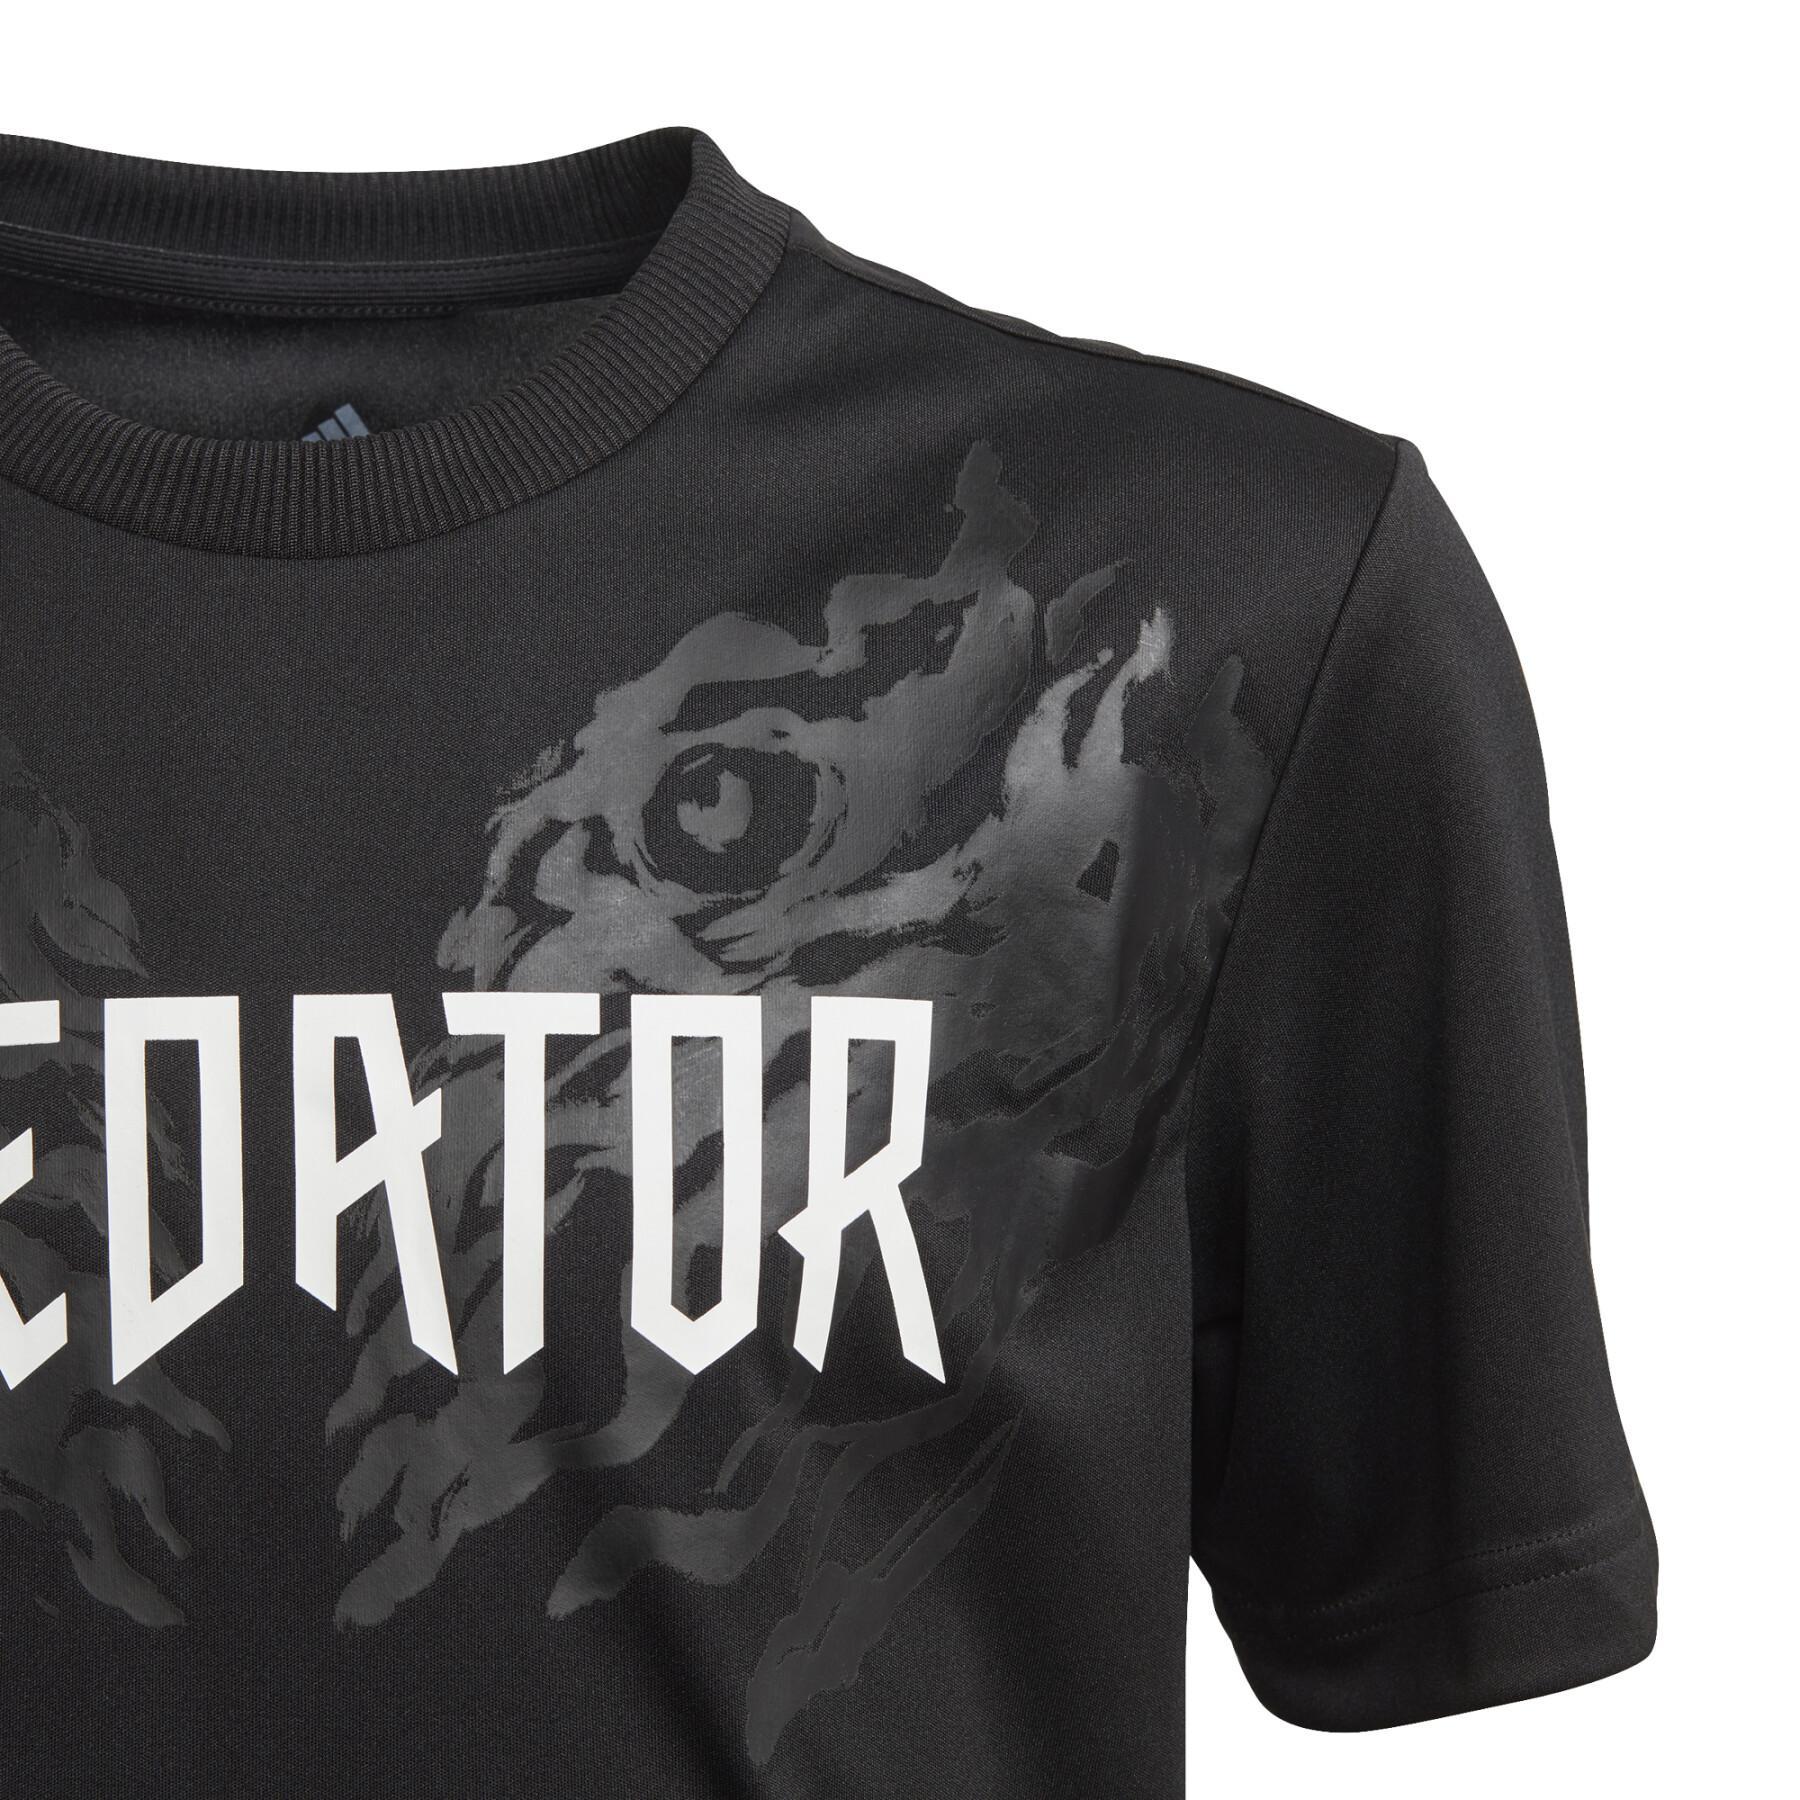 Kinder-T-shirt adidas Predator Graphics